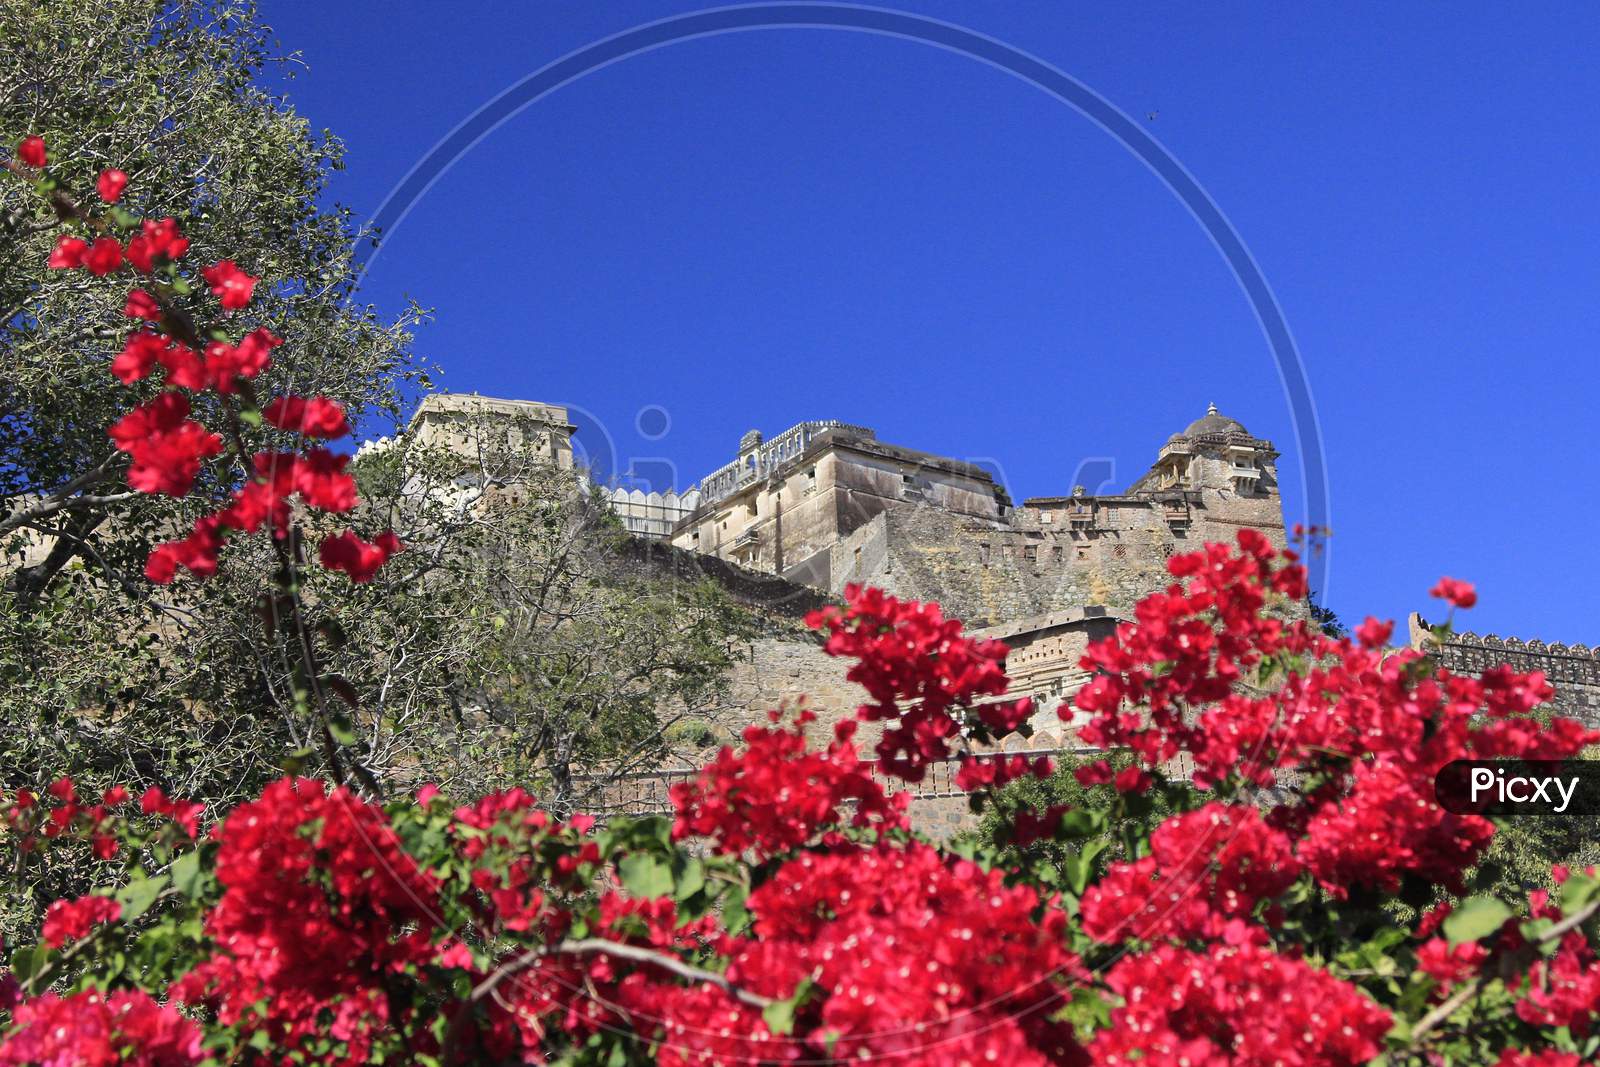 View of Kumbhalgarh Fort, Rajasthan, India